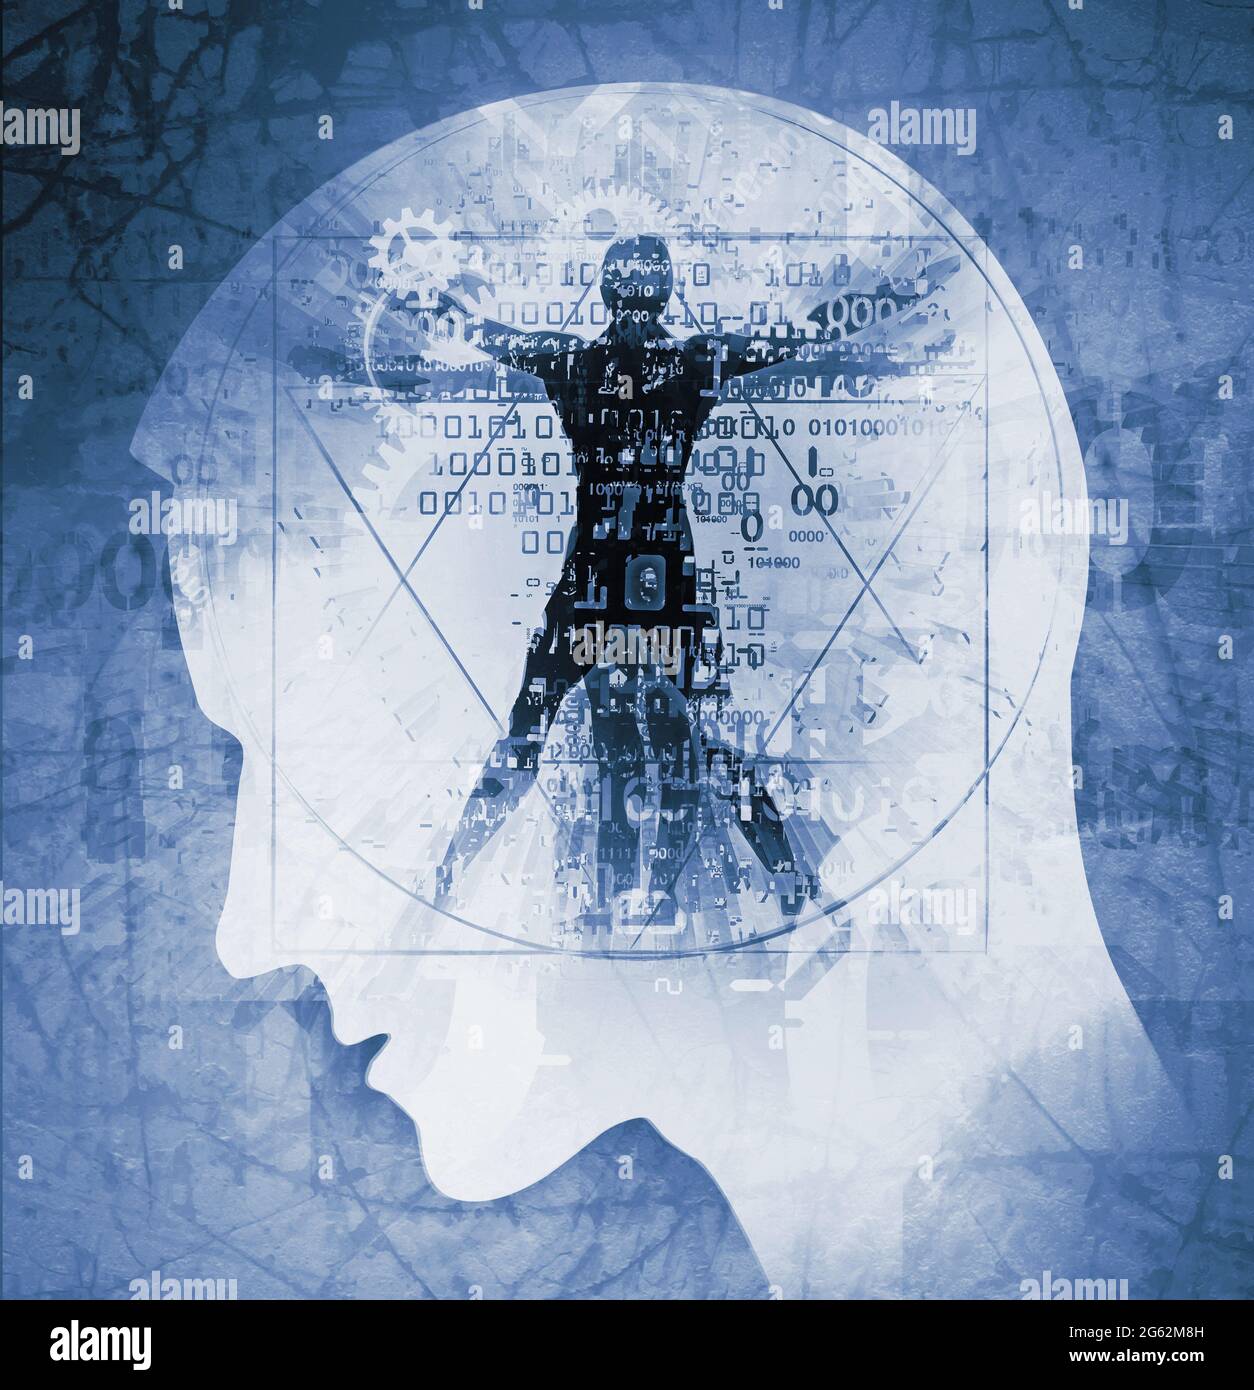 Testa maschile con uomo Vitruviano, concetto di tecnologia e scienza. Illustrazione della testa di giovane uomo stilizzata nel profilo e l'uomo vitruviano. Foto Stock